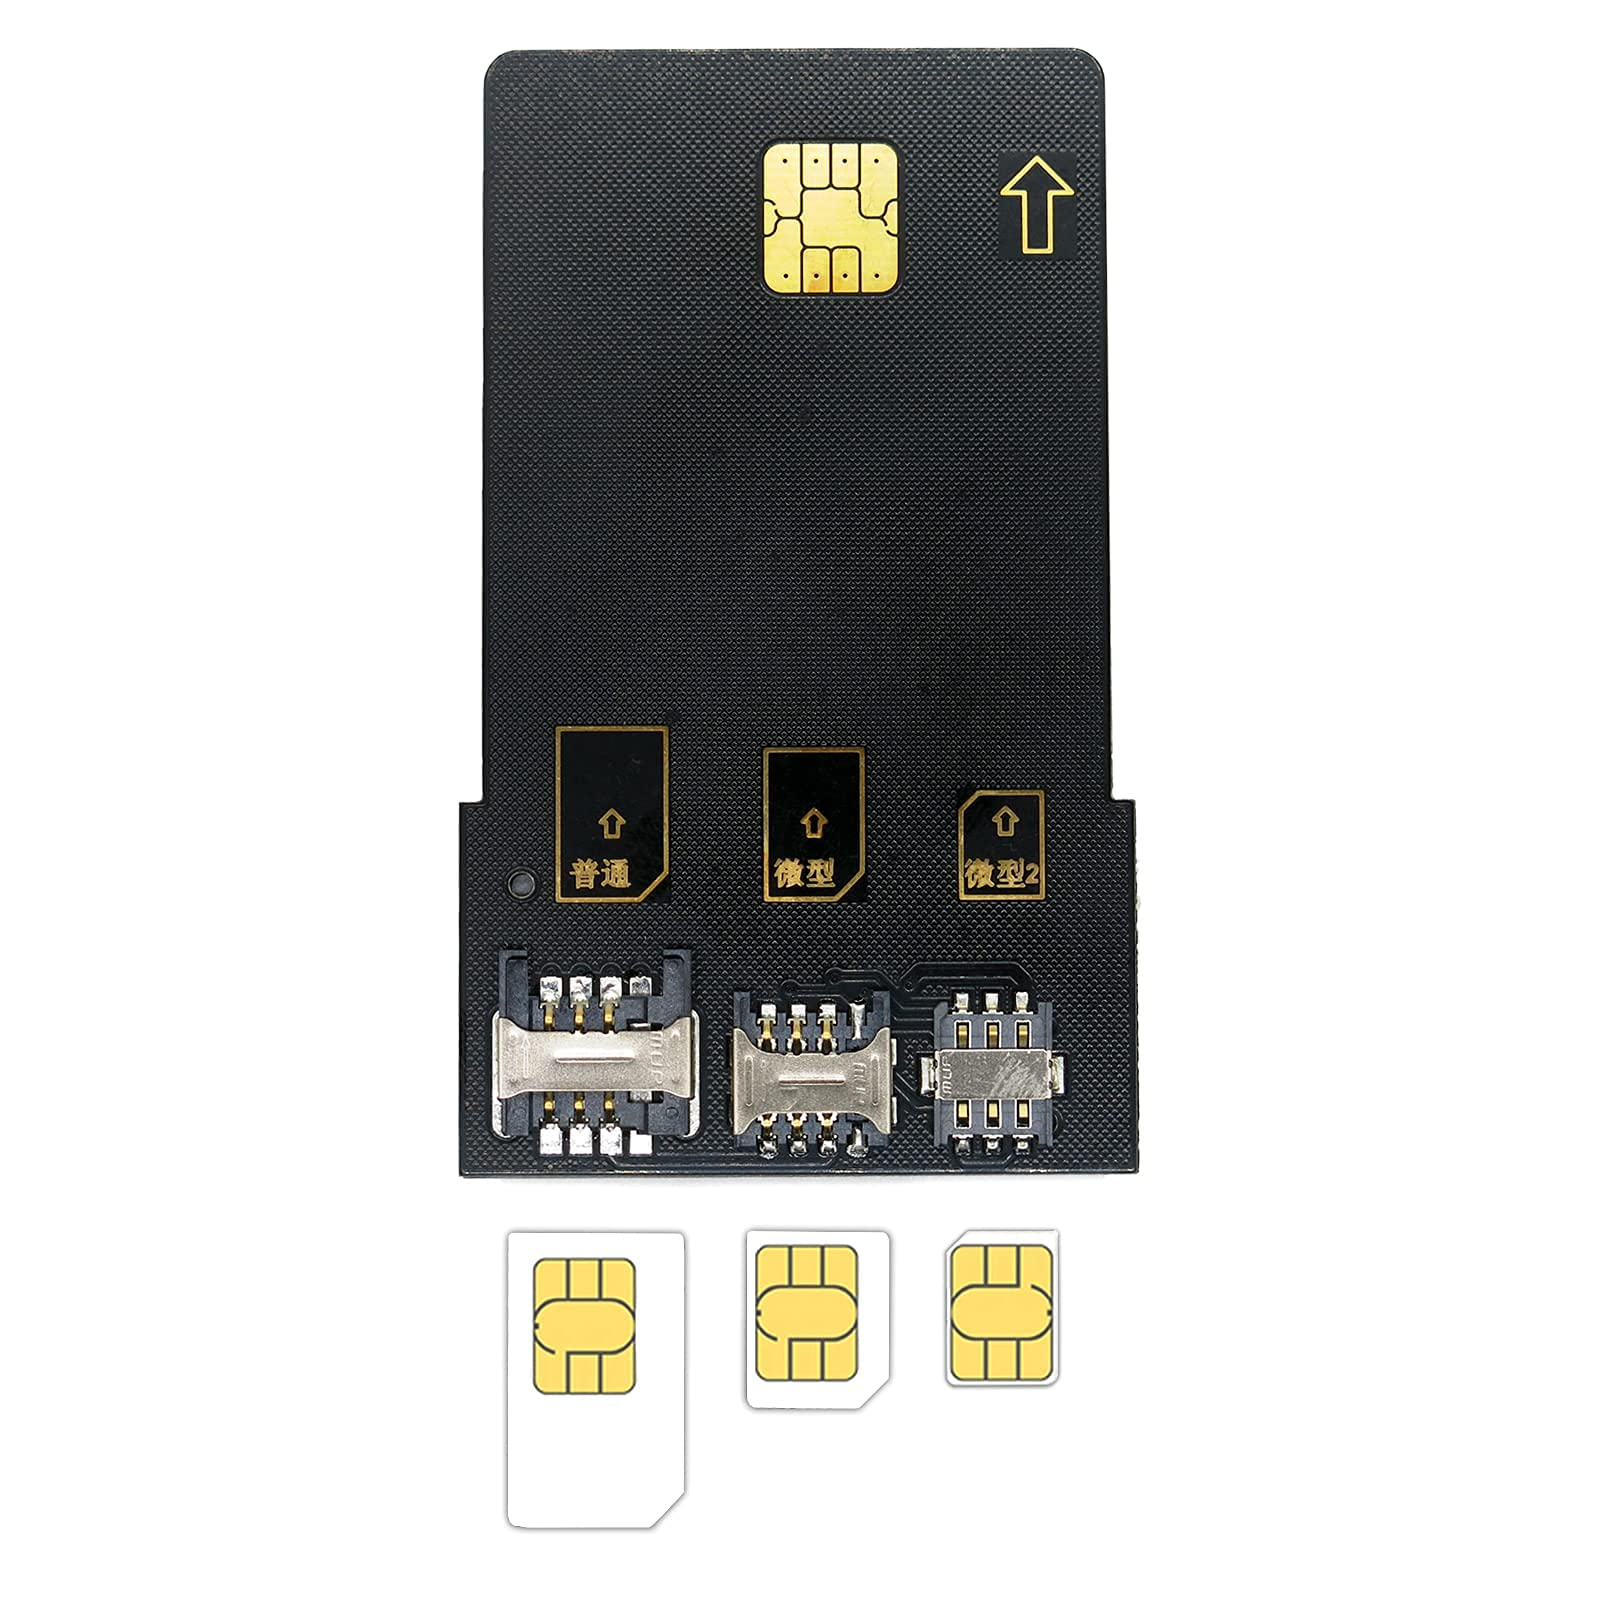 Kit de programa de tarjetas LTE, herramientas y accesorios para tarjetas  SIM que incluyen 1 lector de tarjetas SIM + 5 tarjetas USIM programables +  1